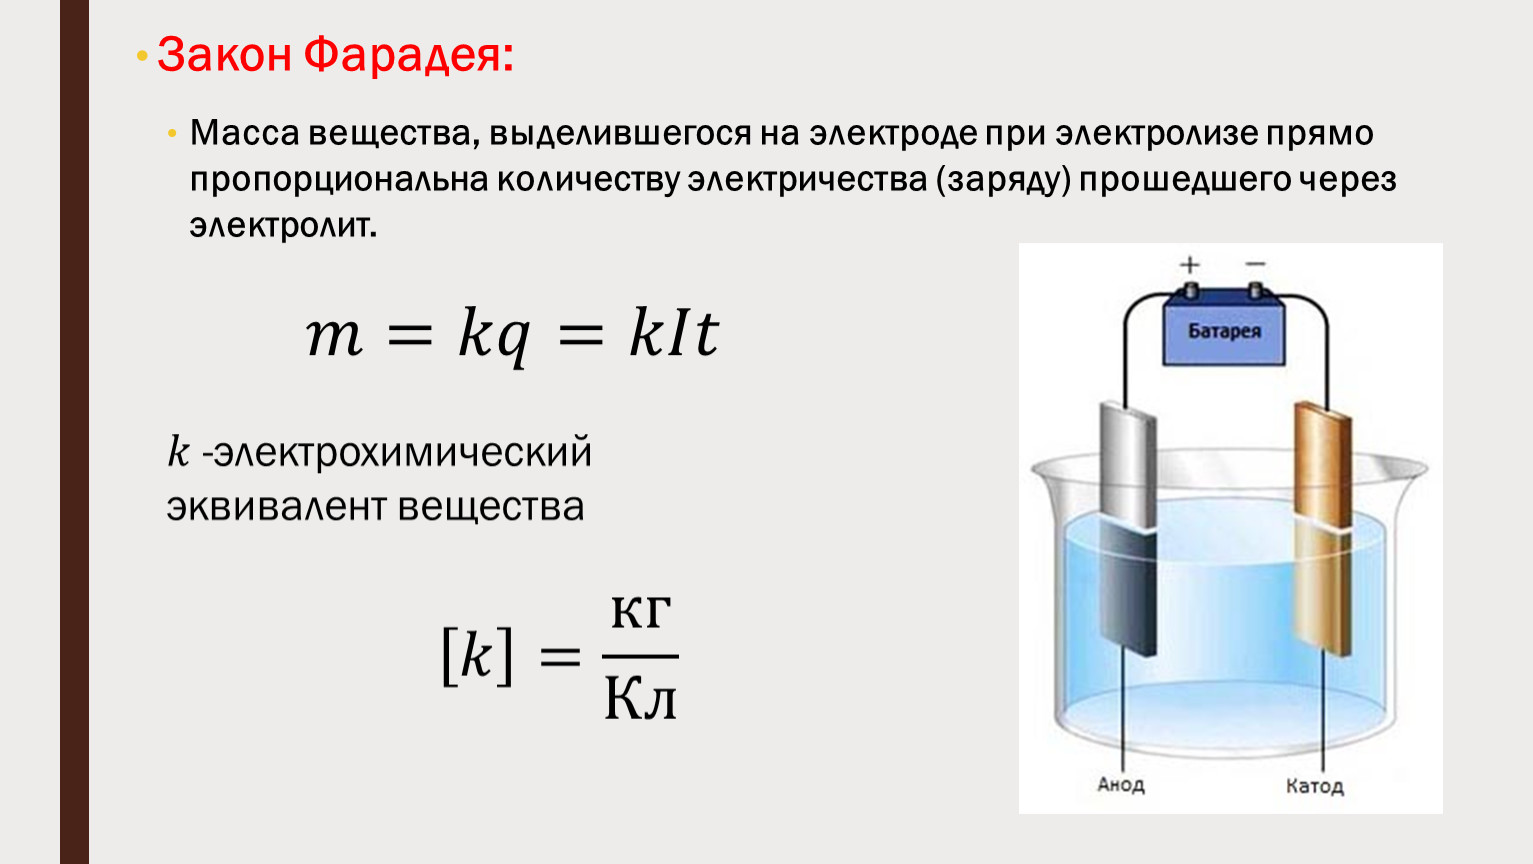 Кислород выделяется на аноде при воды. 1 Закон Фарадея для электролиза формула. 2 Закон Фарадея для электролиза формула. Закон Фарадея для электролиза формула. Масса вещества на электроде при электролизе.